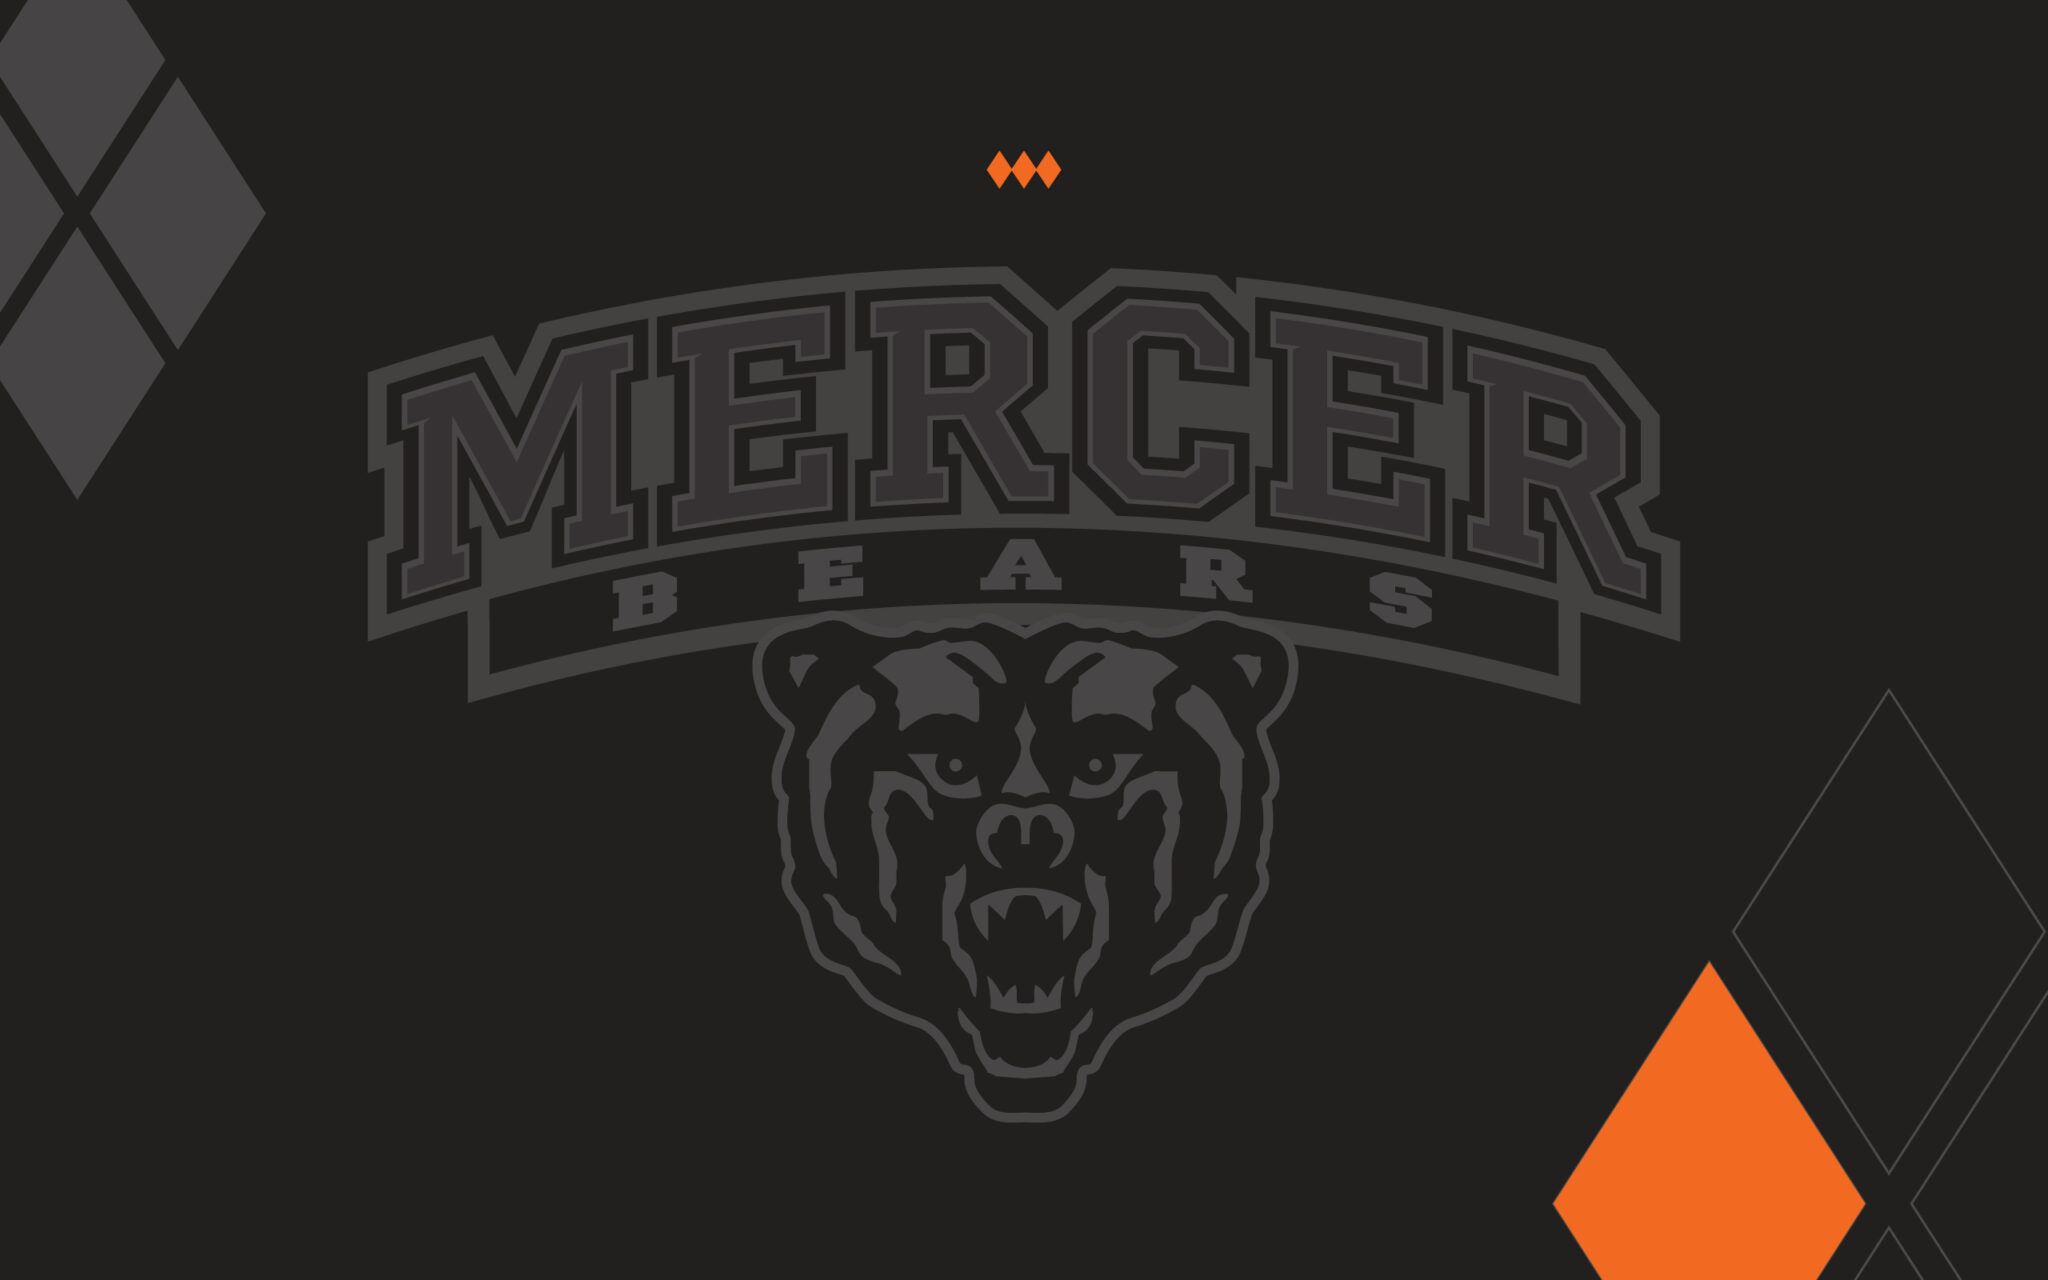 Mercer Bears Desktop Wallpaper